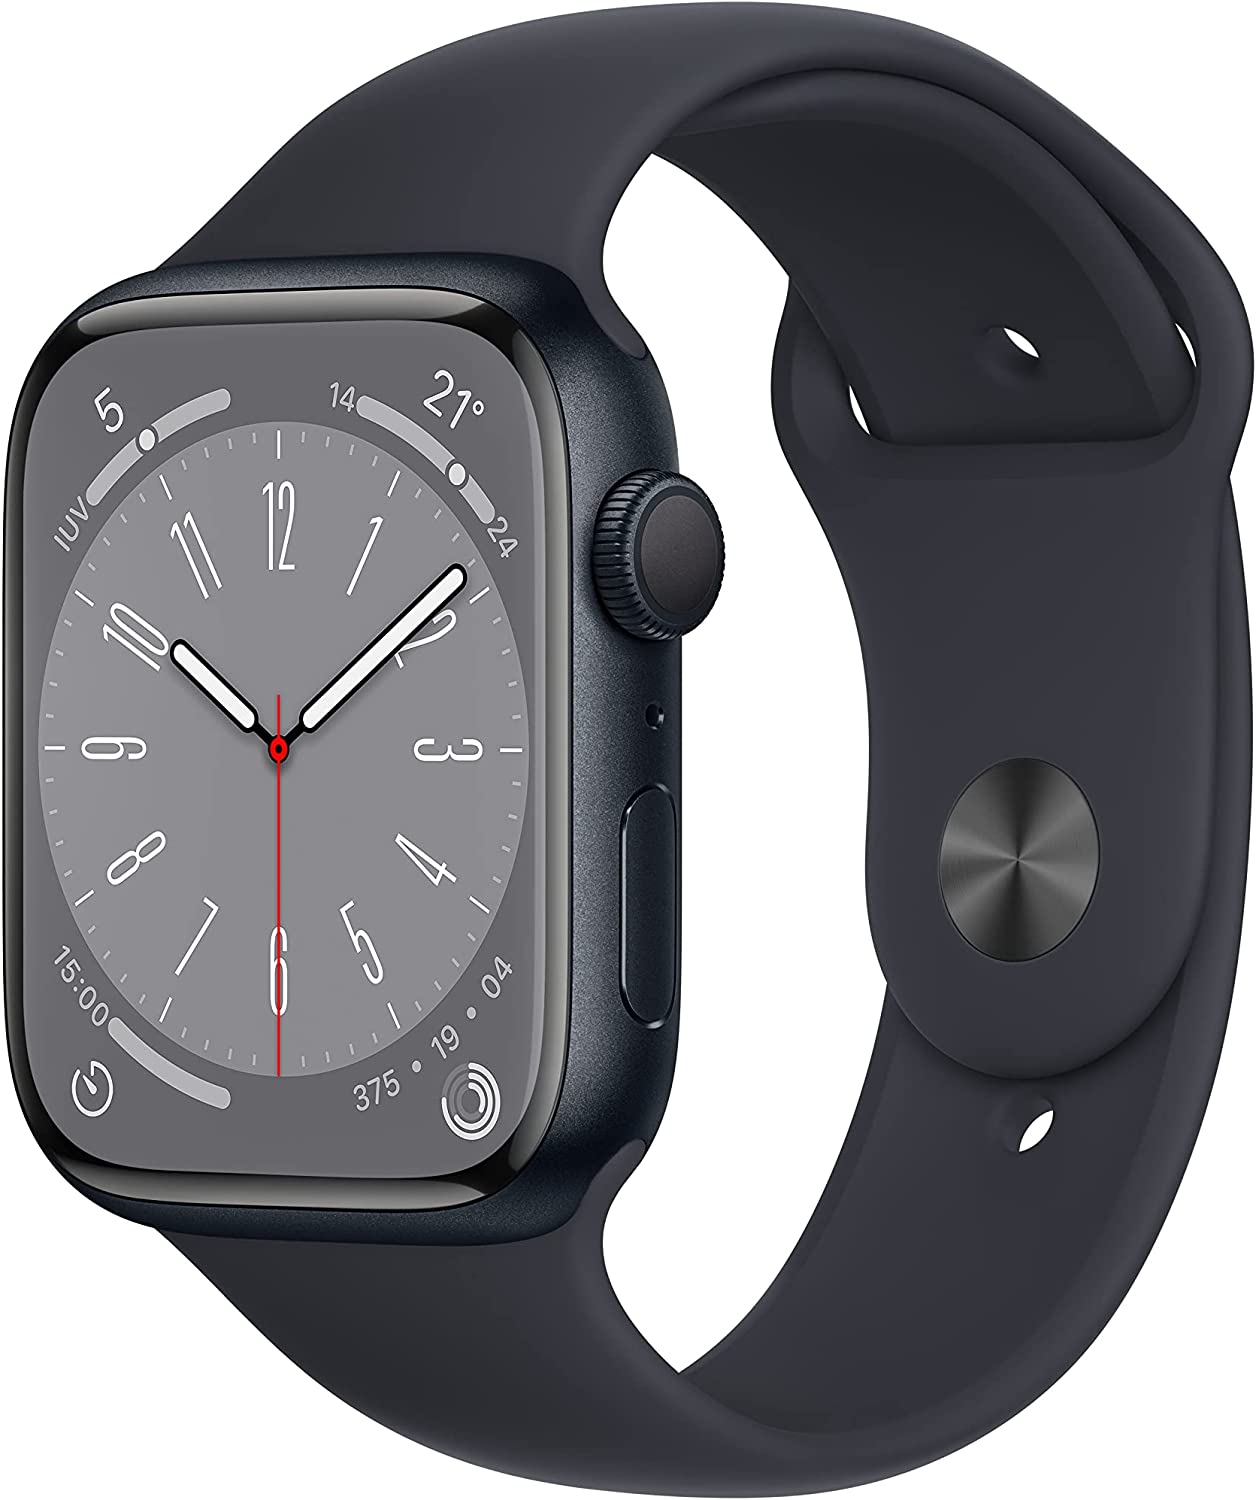 Apple Watch 8 versus Apple Watch 9